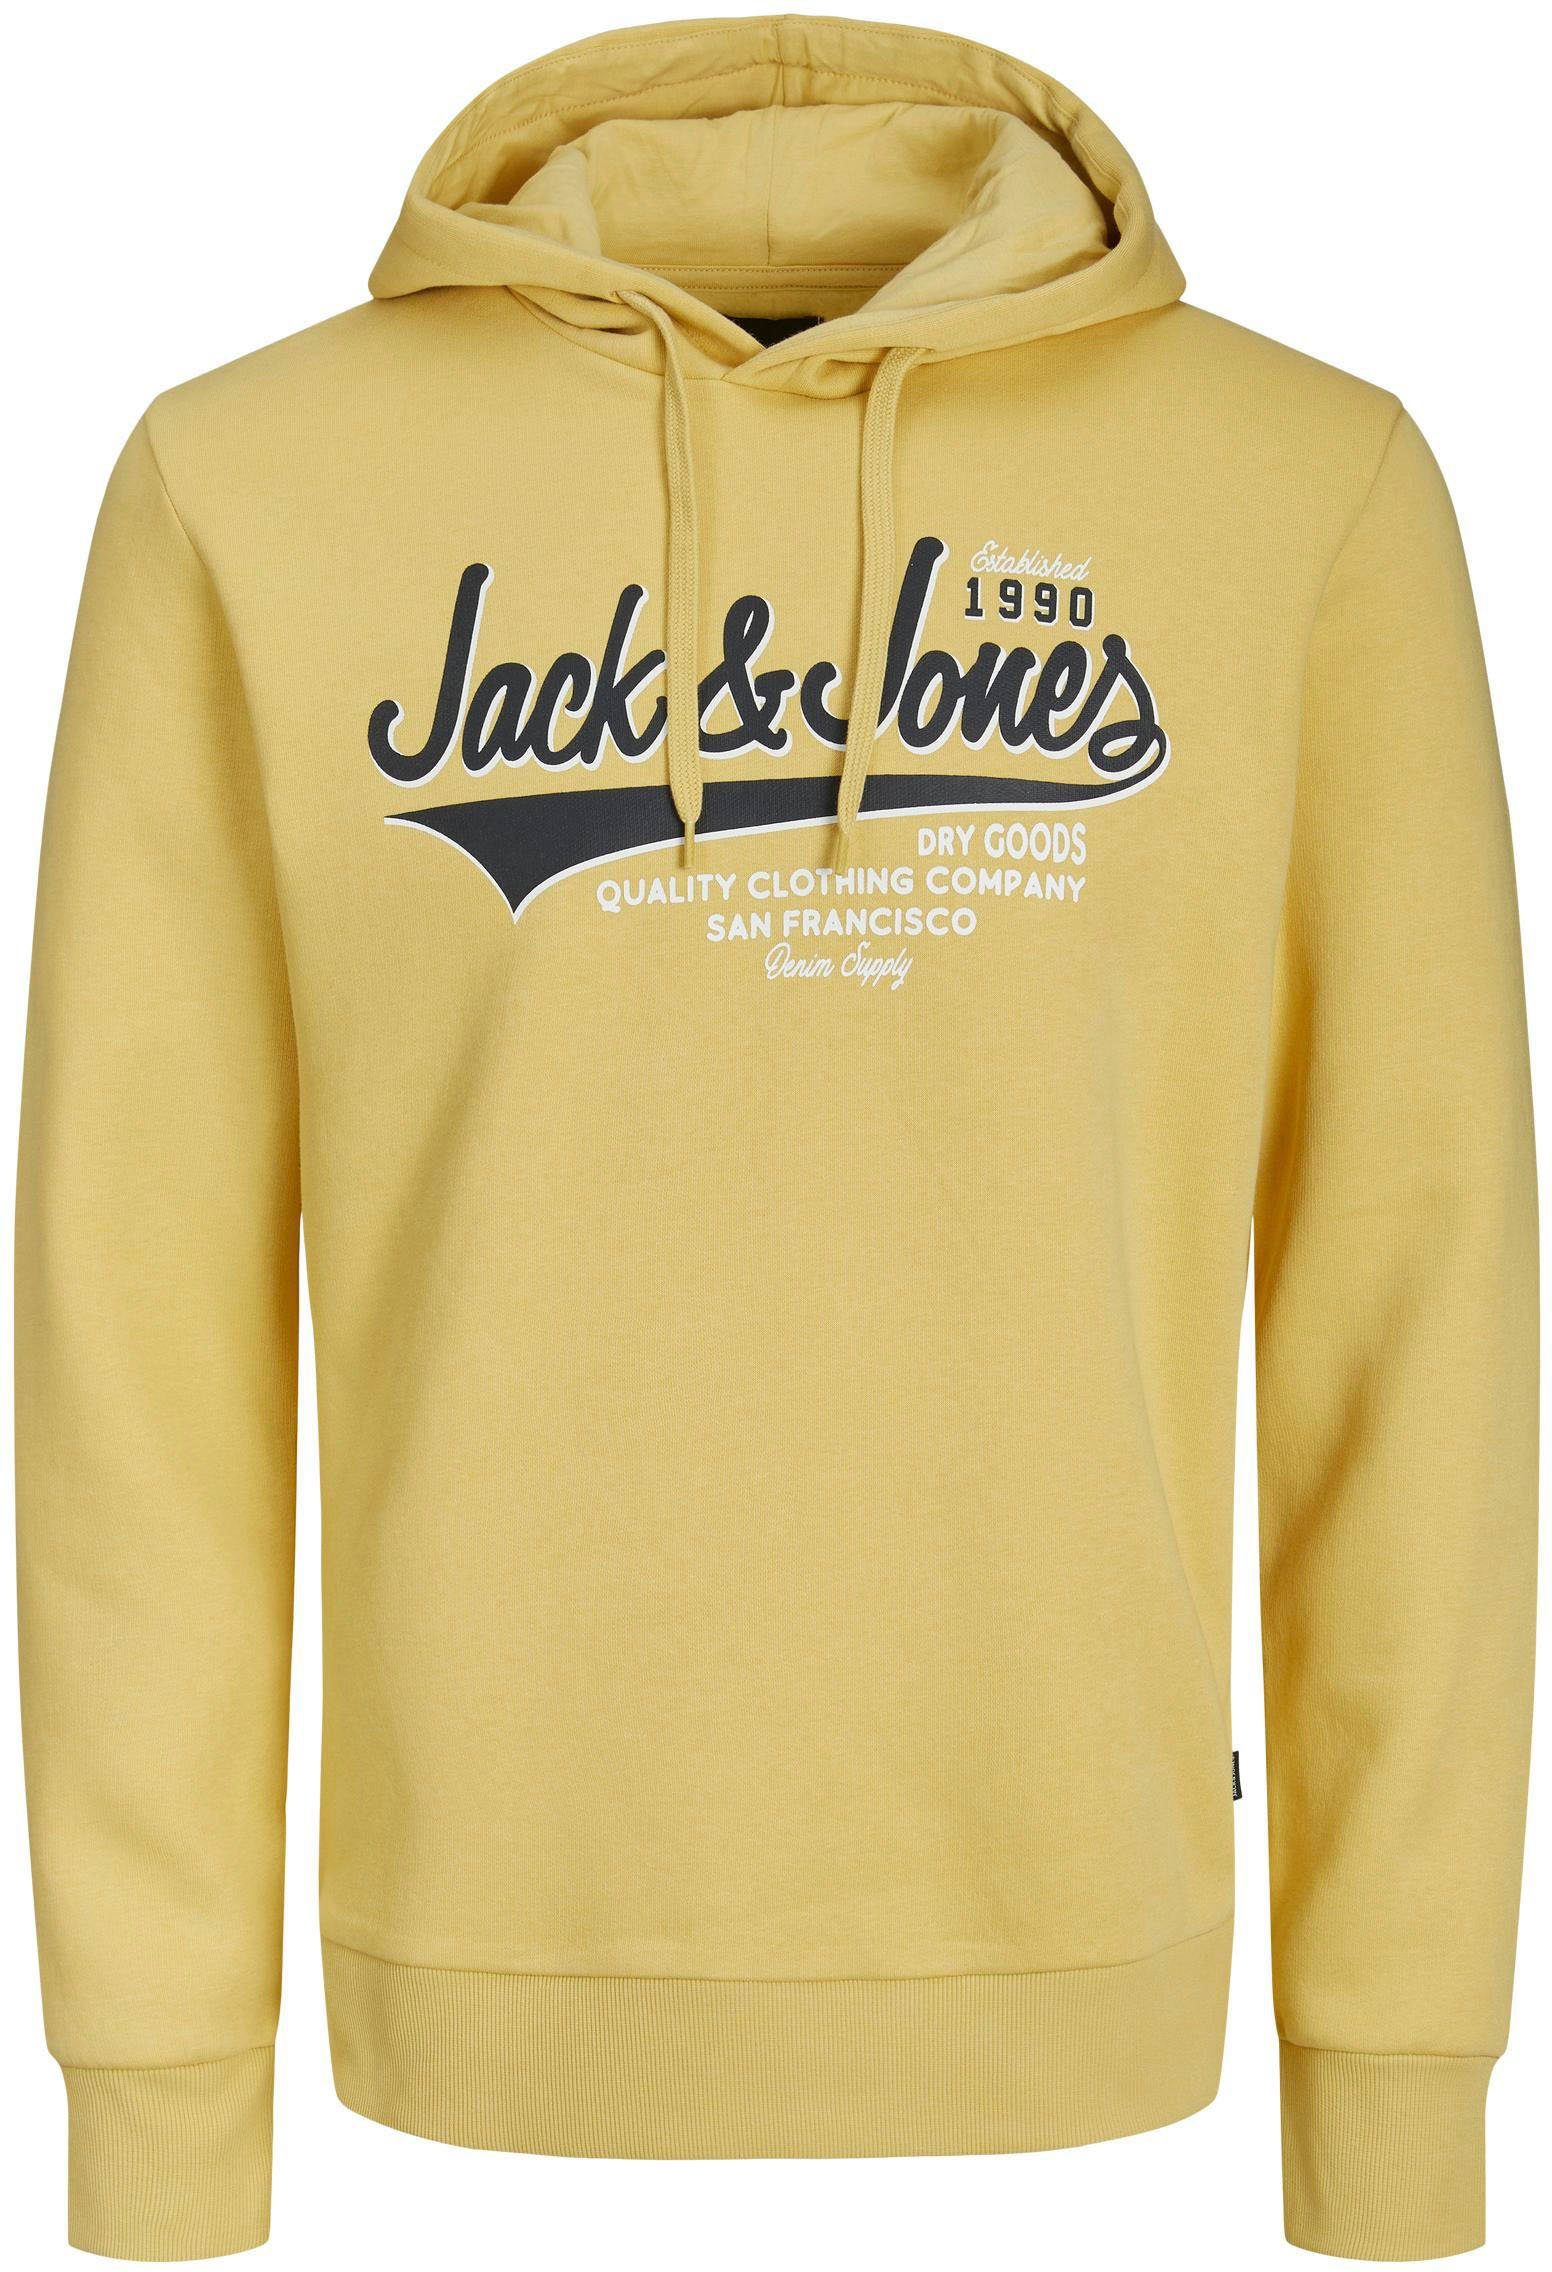 HOOD LOGO Jack Jones SWEAT Kapuzensweatshirt jojoba &